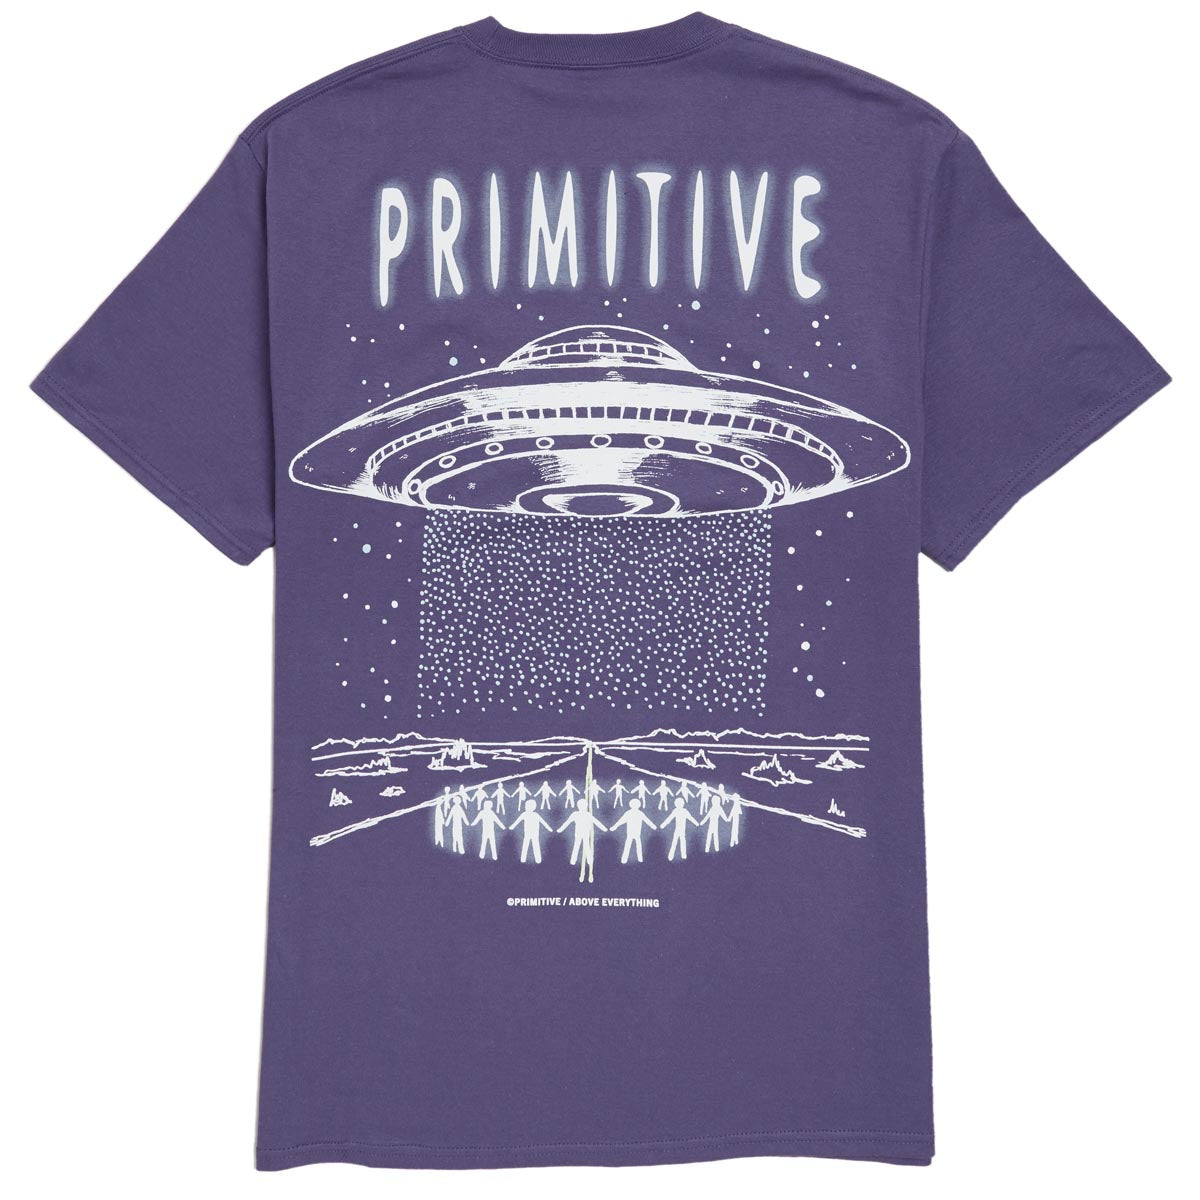 Primitive Contact T-Shirt - Purple image 1